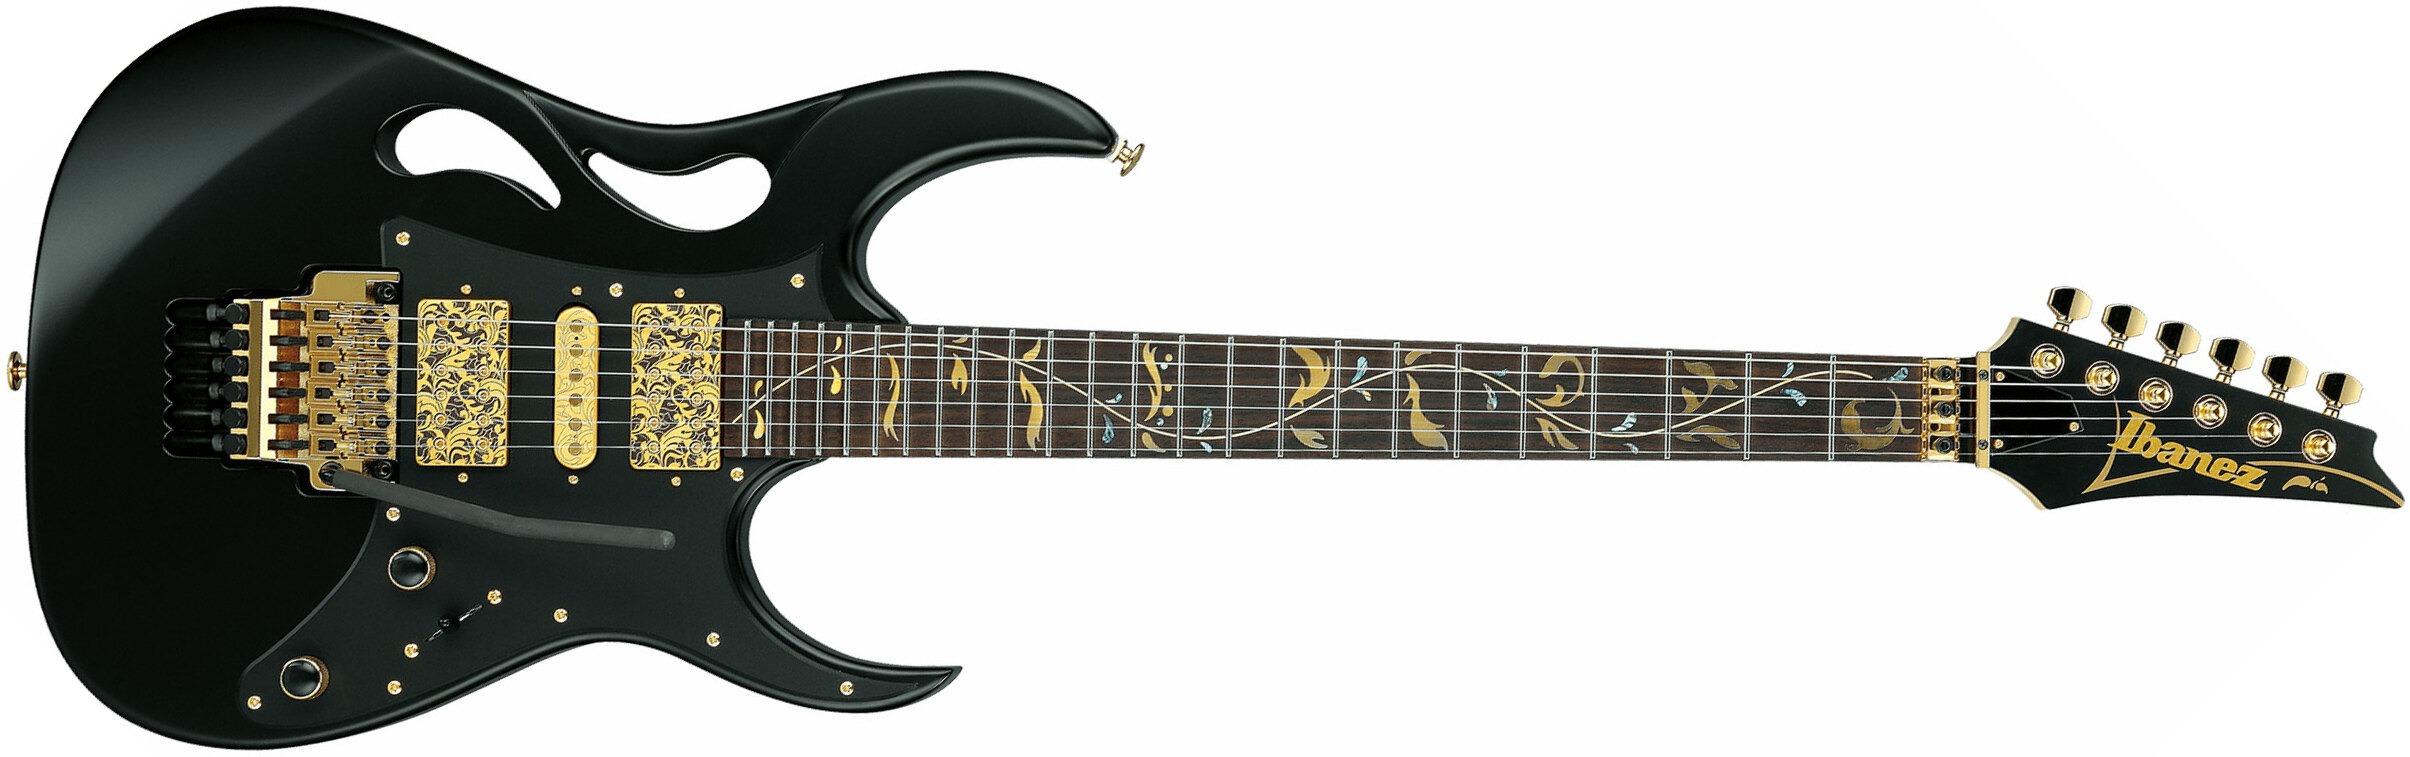 Ibanez Steve Vai Pia3761 Xb Signature Jap 2h Dimarzio Fr Rw - Onyx Black - Str shape electric guitar - Main picture